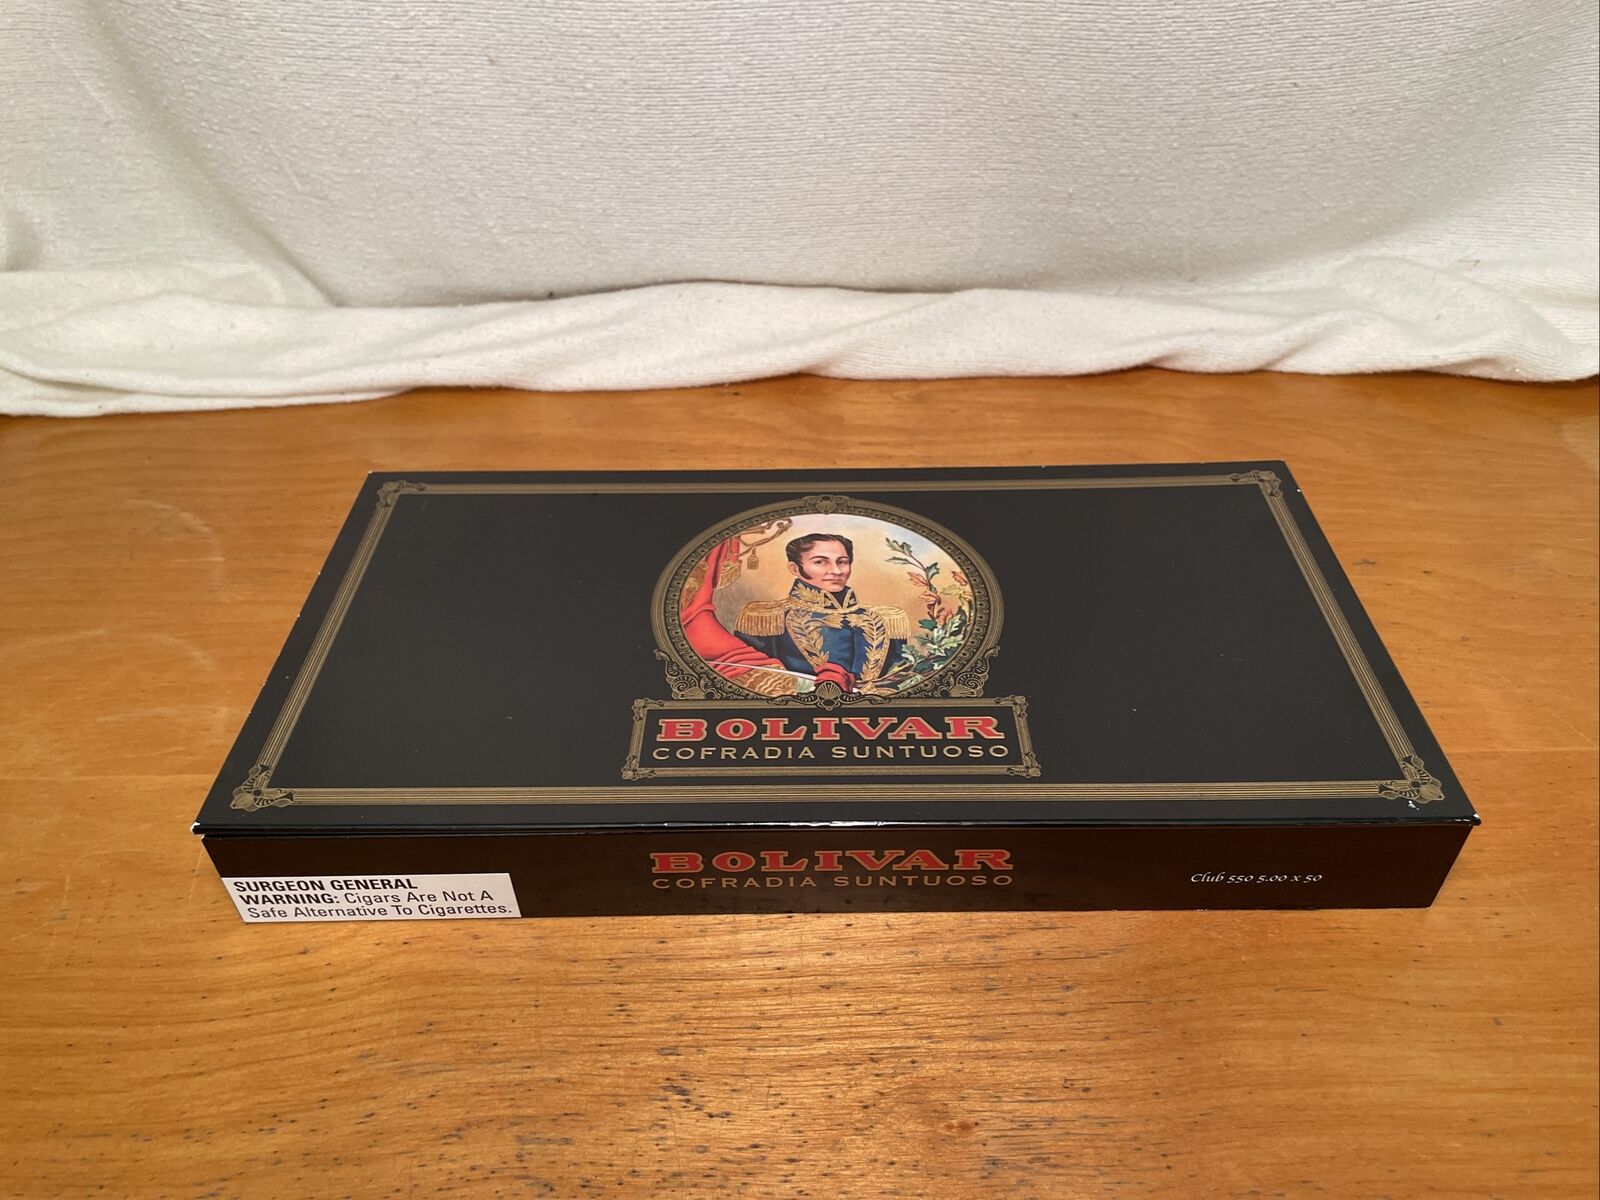 Bolivar Cofradia Suntuoso Cigar Box Empty 12 1/4” X 6 1/4”